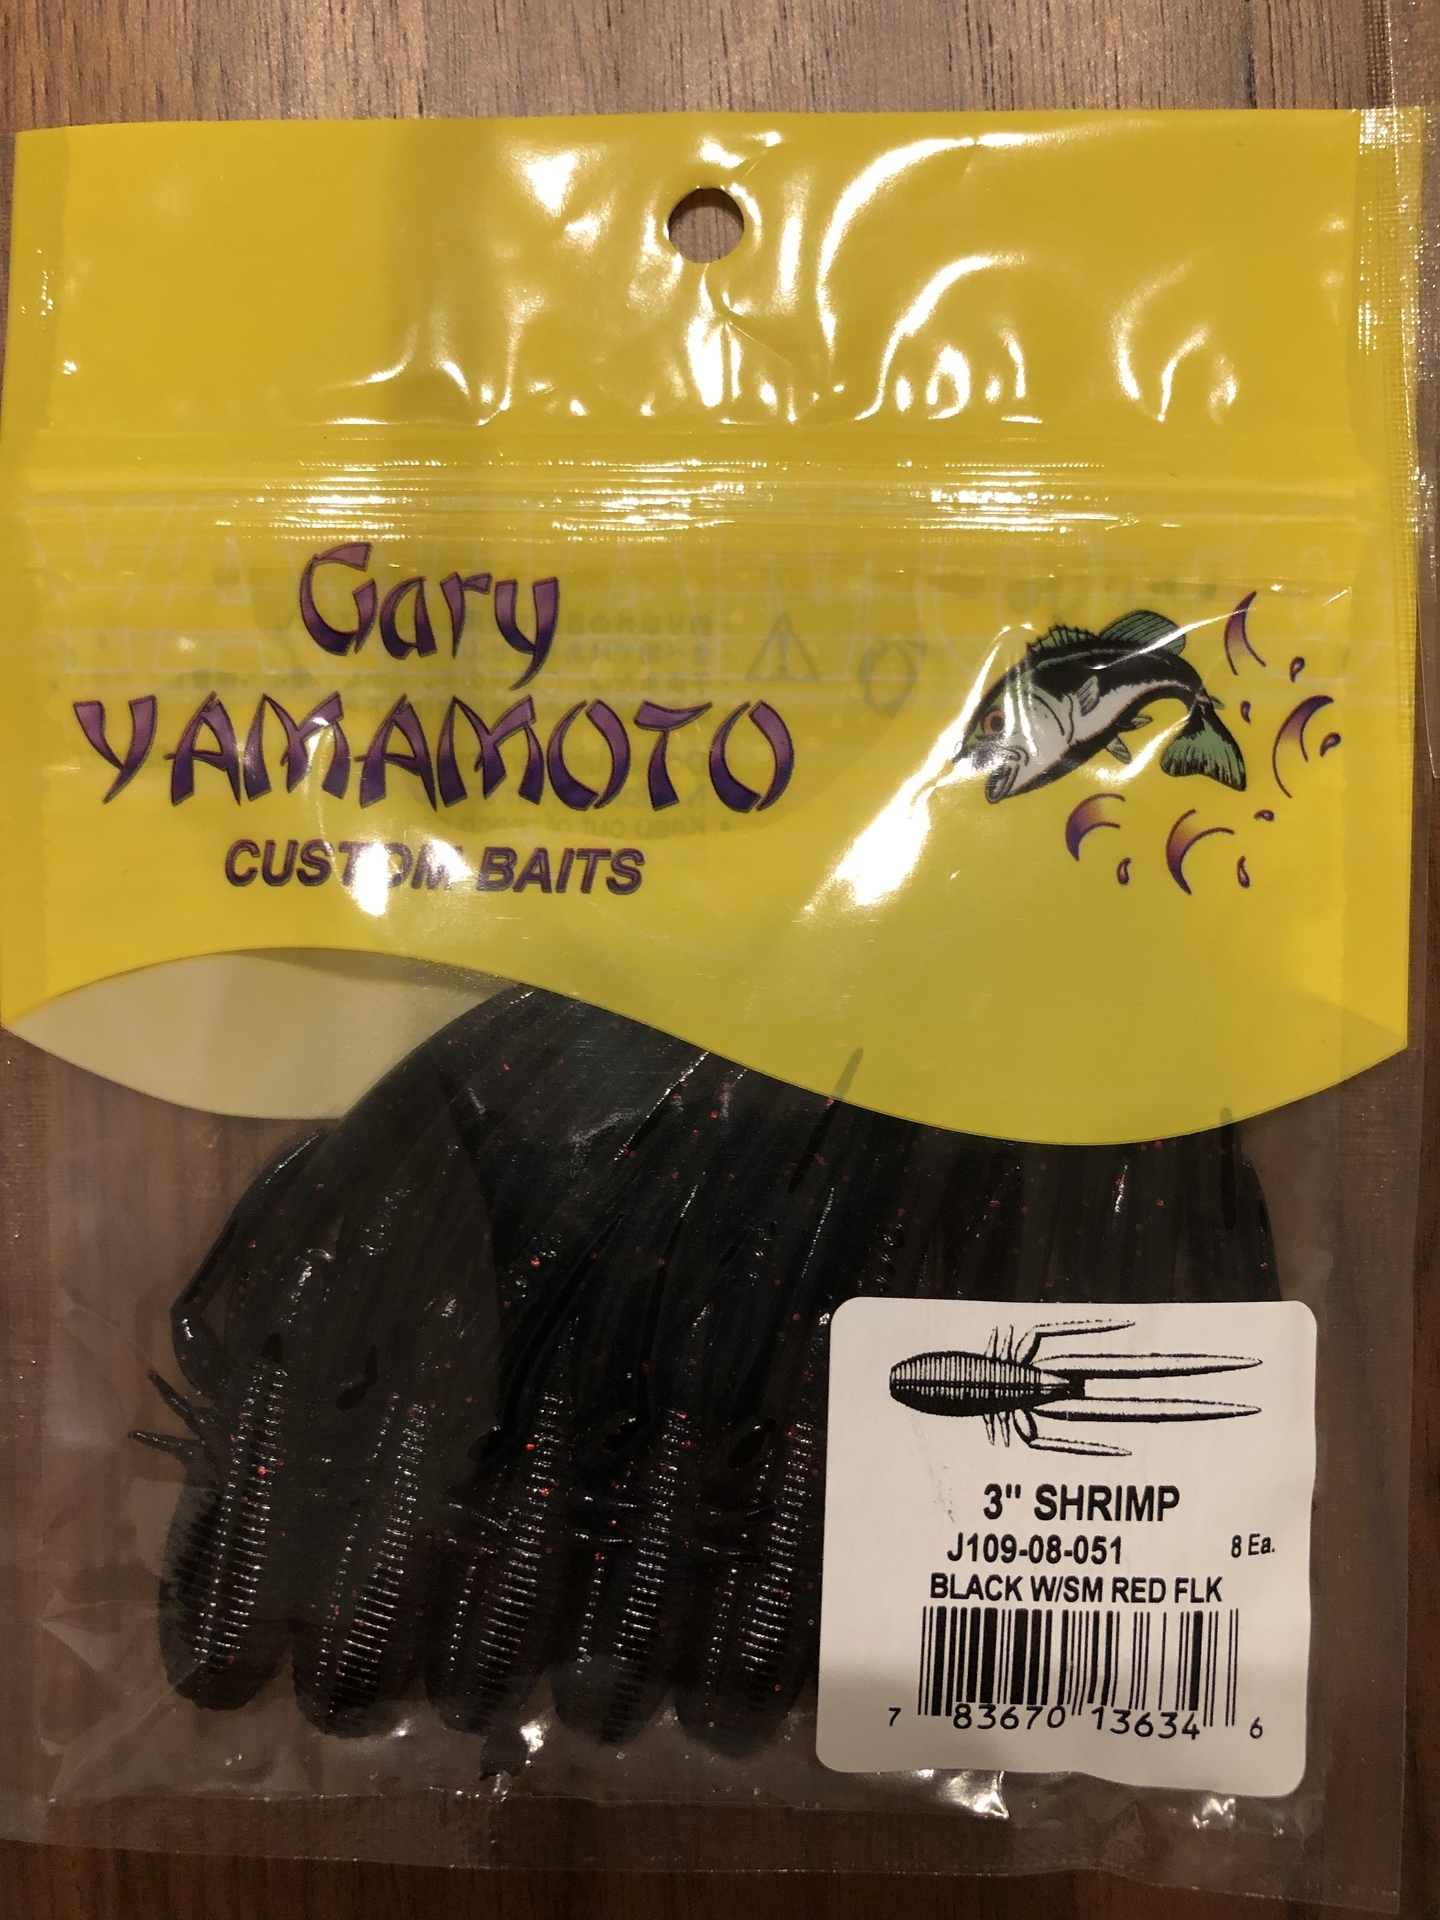 ゲーリーヤマモト Gary Yamamoto 3インチシュリンプ 3inch Shrimp